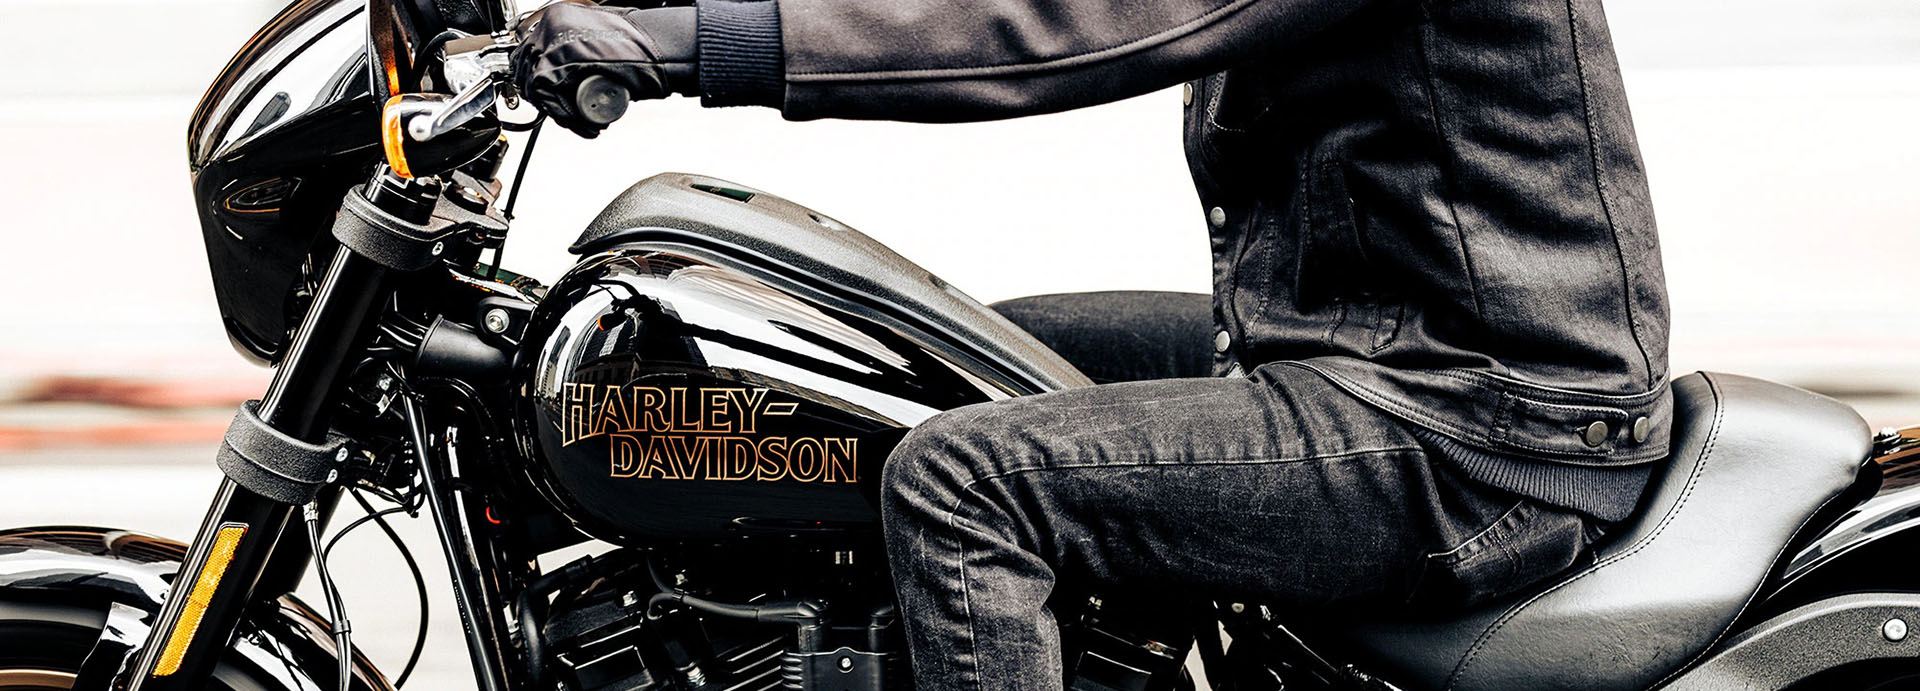 2022 Harley-Davidson Low Rider® S in Colorado Springs, Colorado - Photo 4